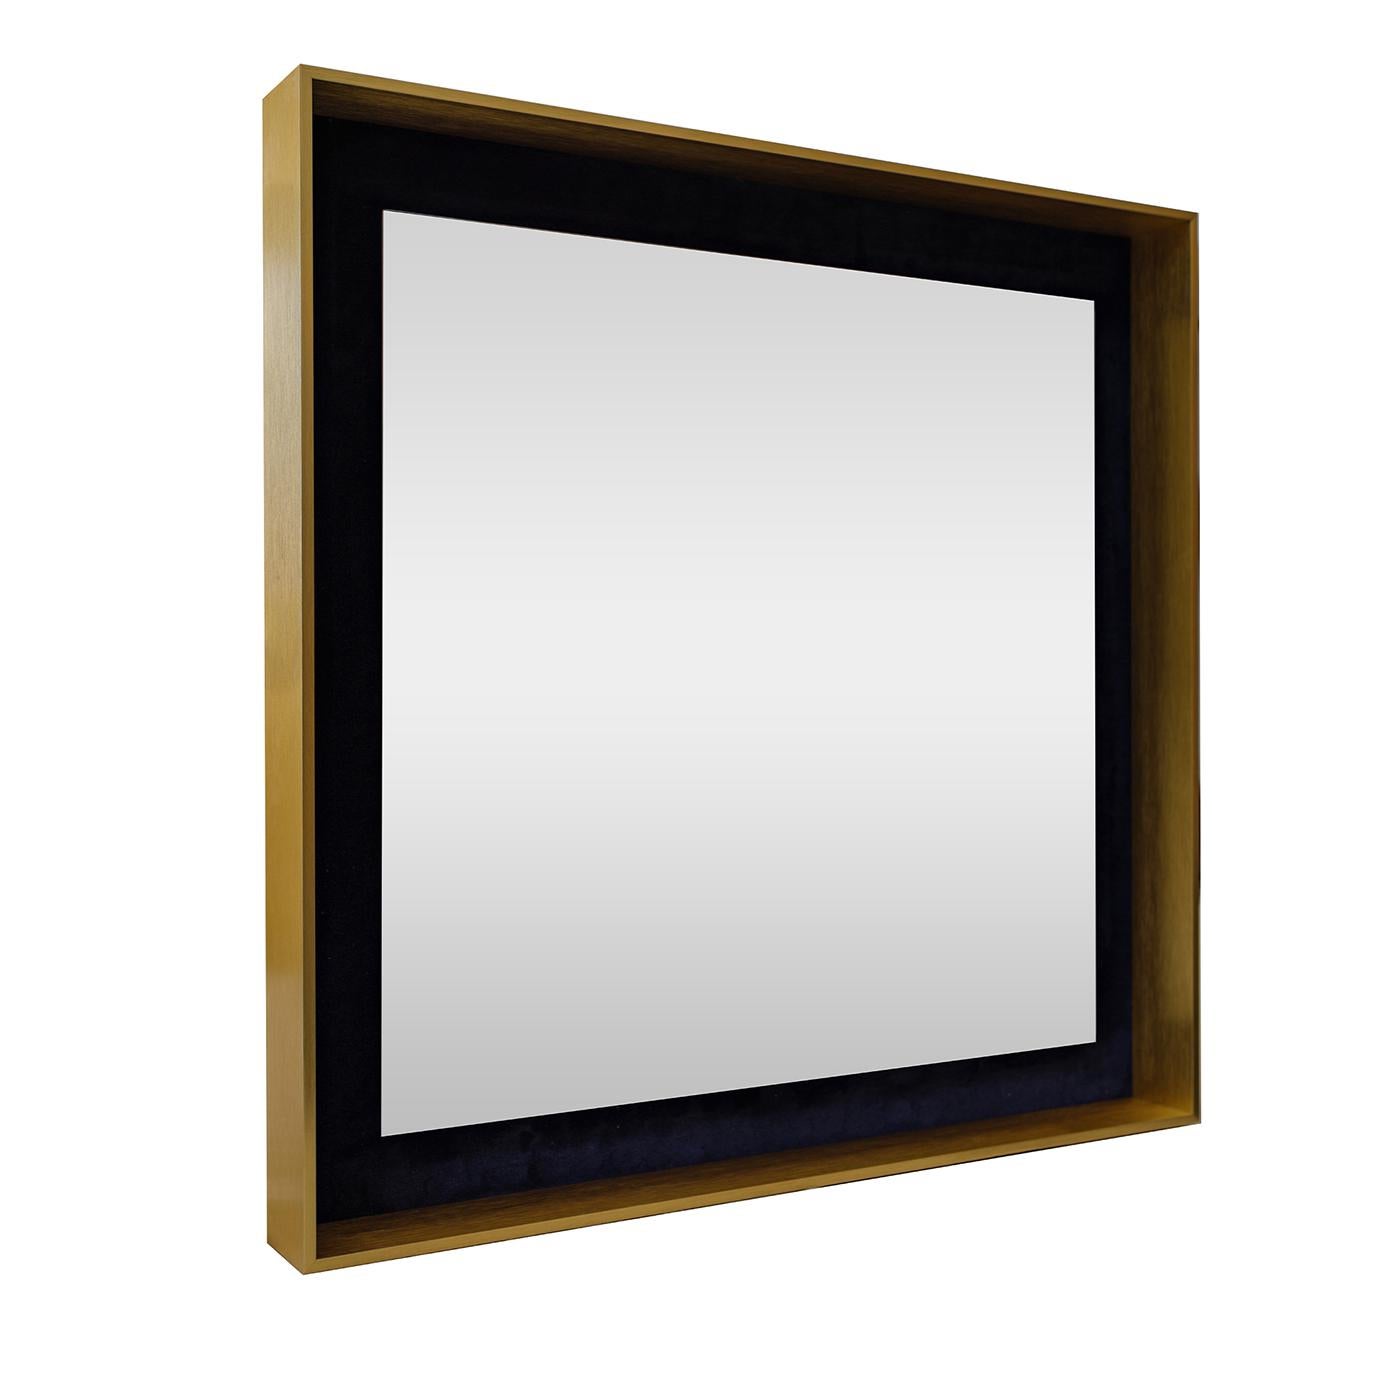 1 Beekman verfügt über einen schwebenden Spiegel auf einem weichen Samtboden, der von einem lackierten Aluminiumrahmen umgeben ist. Das Konzept sieht eine unbegrenzte Anzahl von Materialien für den Sockel vor, von farbigen Spiegeln über Holz bis hin